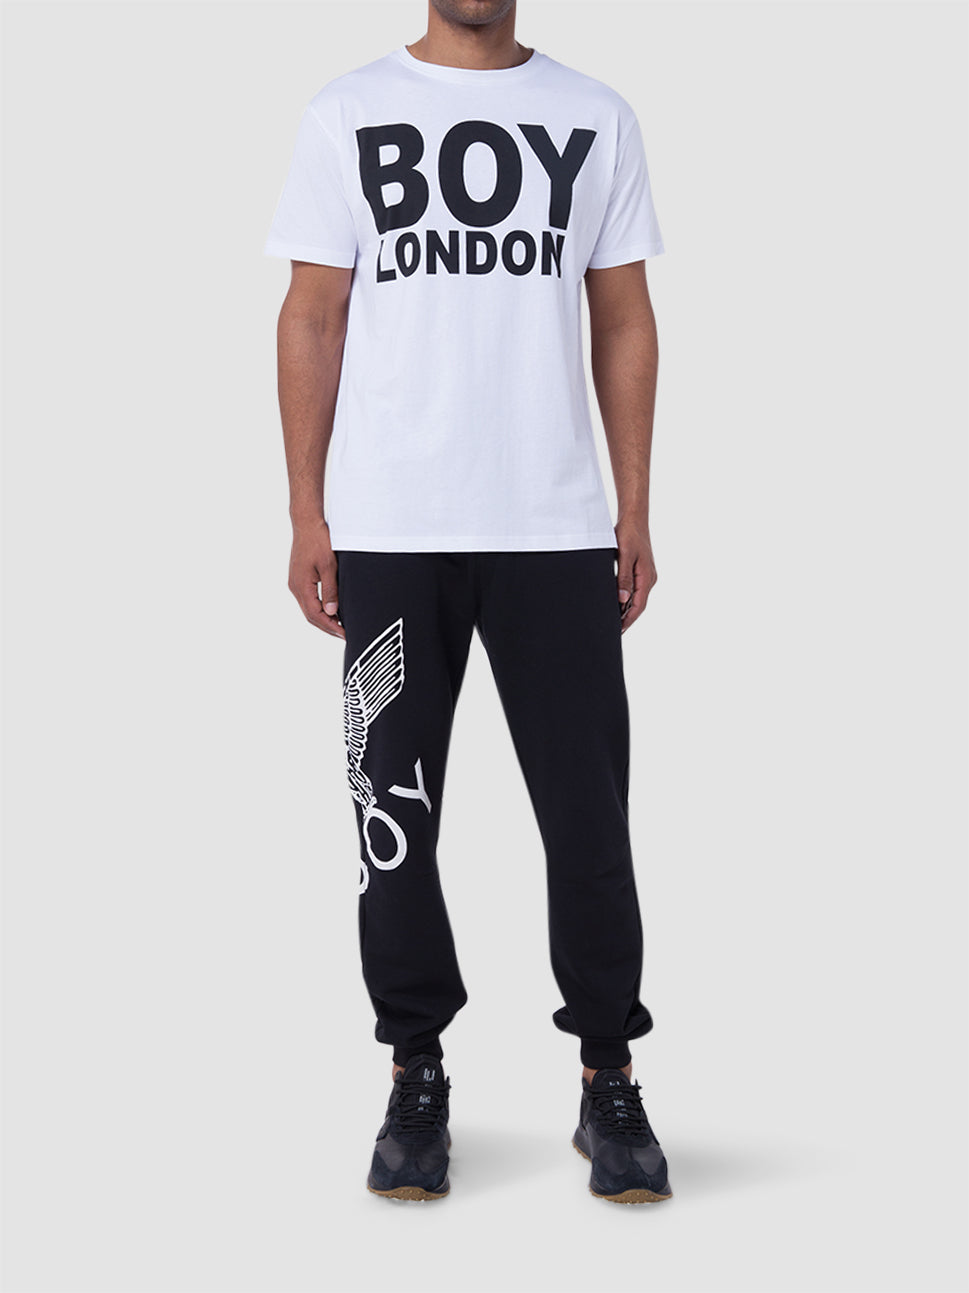 boy london london t shirt white black 601168 60000013